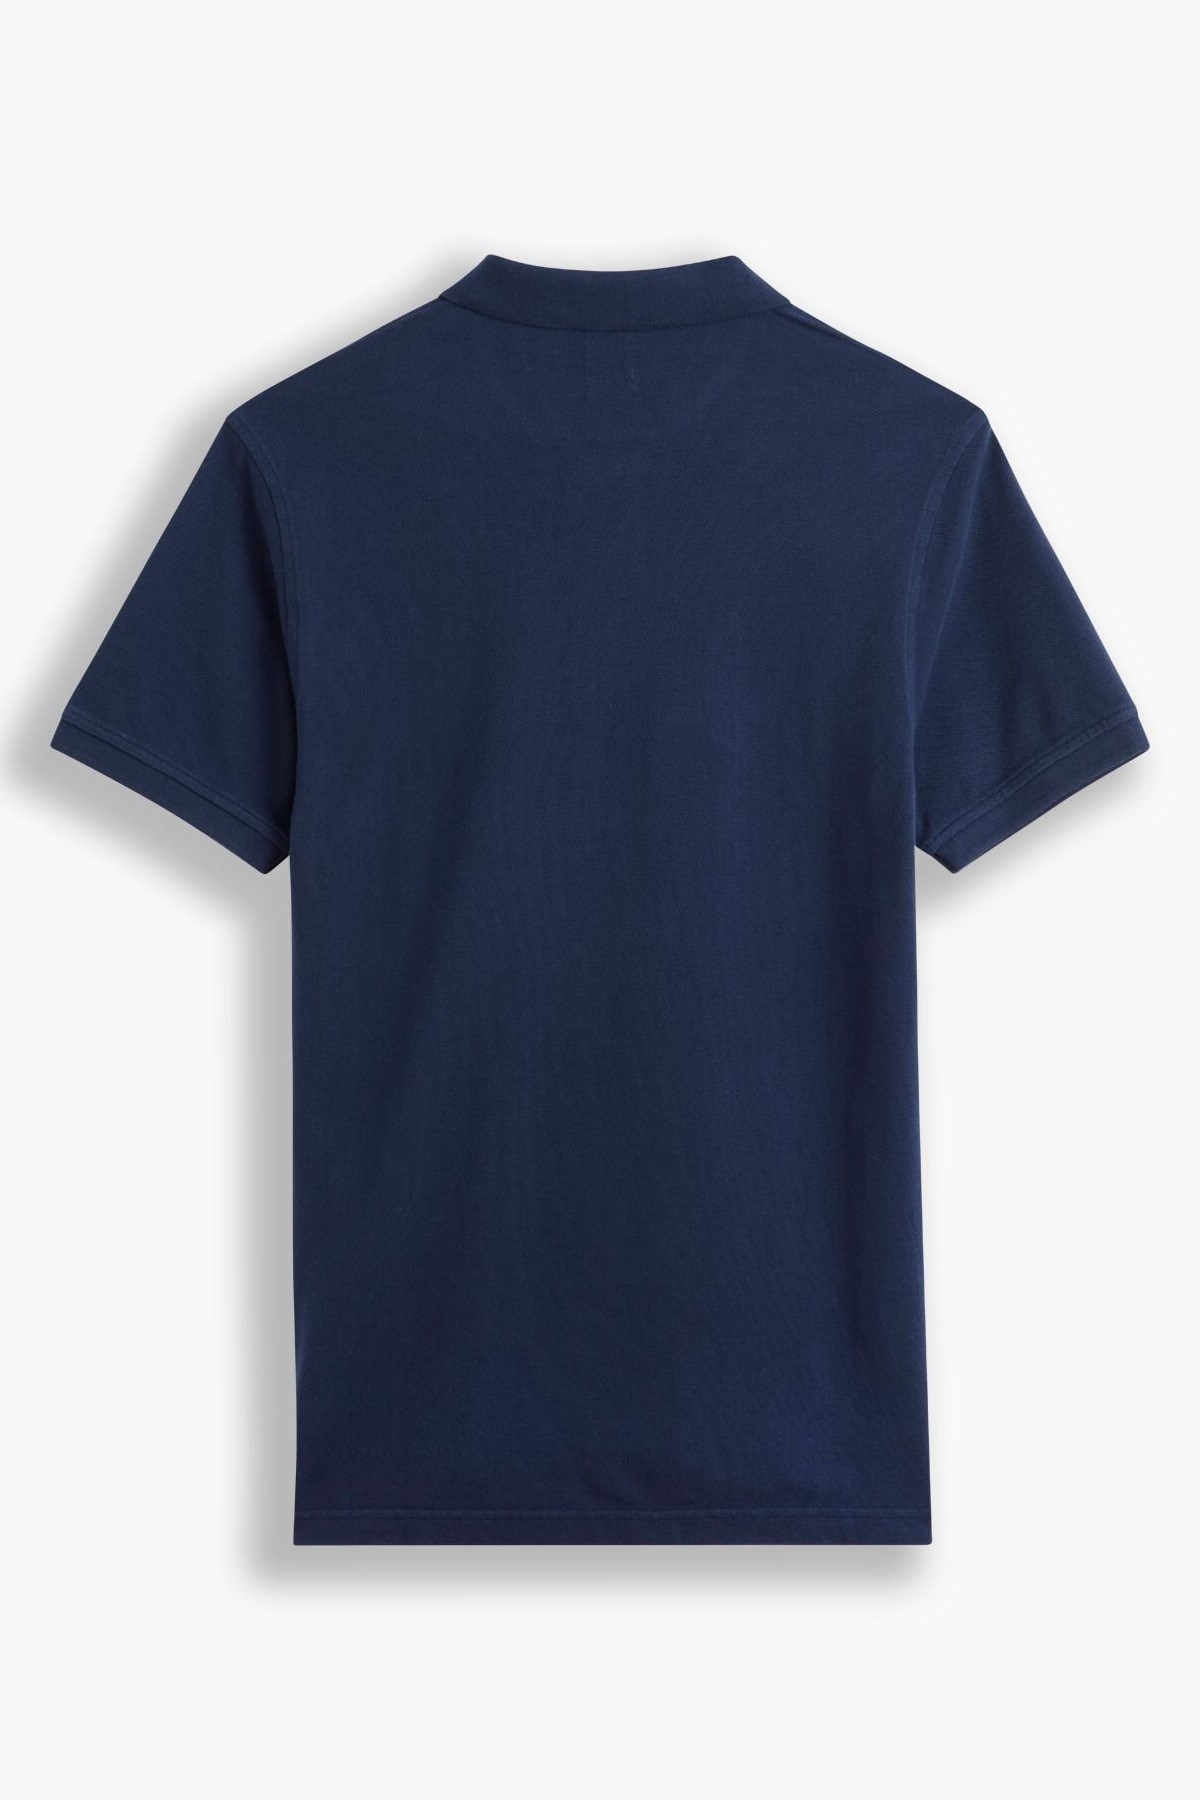 Levis Erkek T-Shirt A0229-0008 